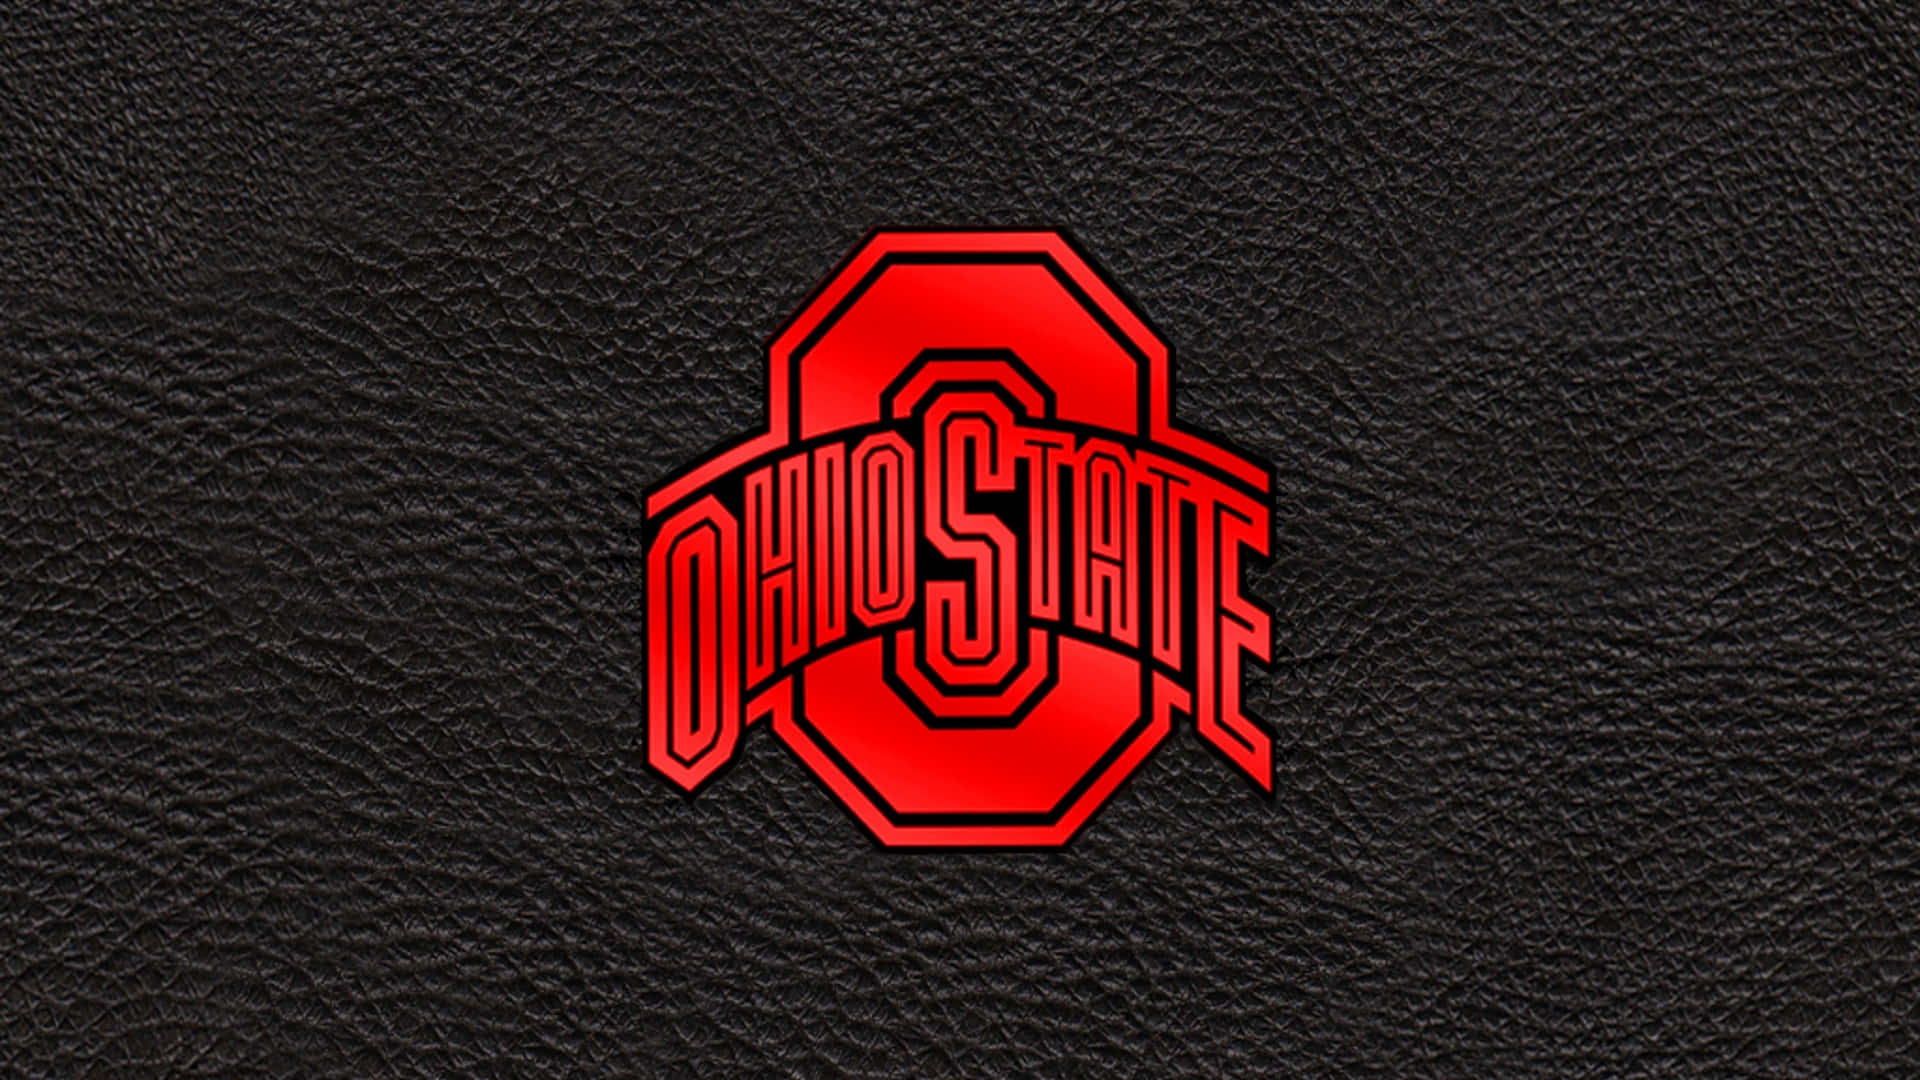 Black Aesthetic Ohio State Football Team Logo Design Wallpaper